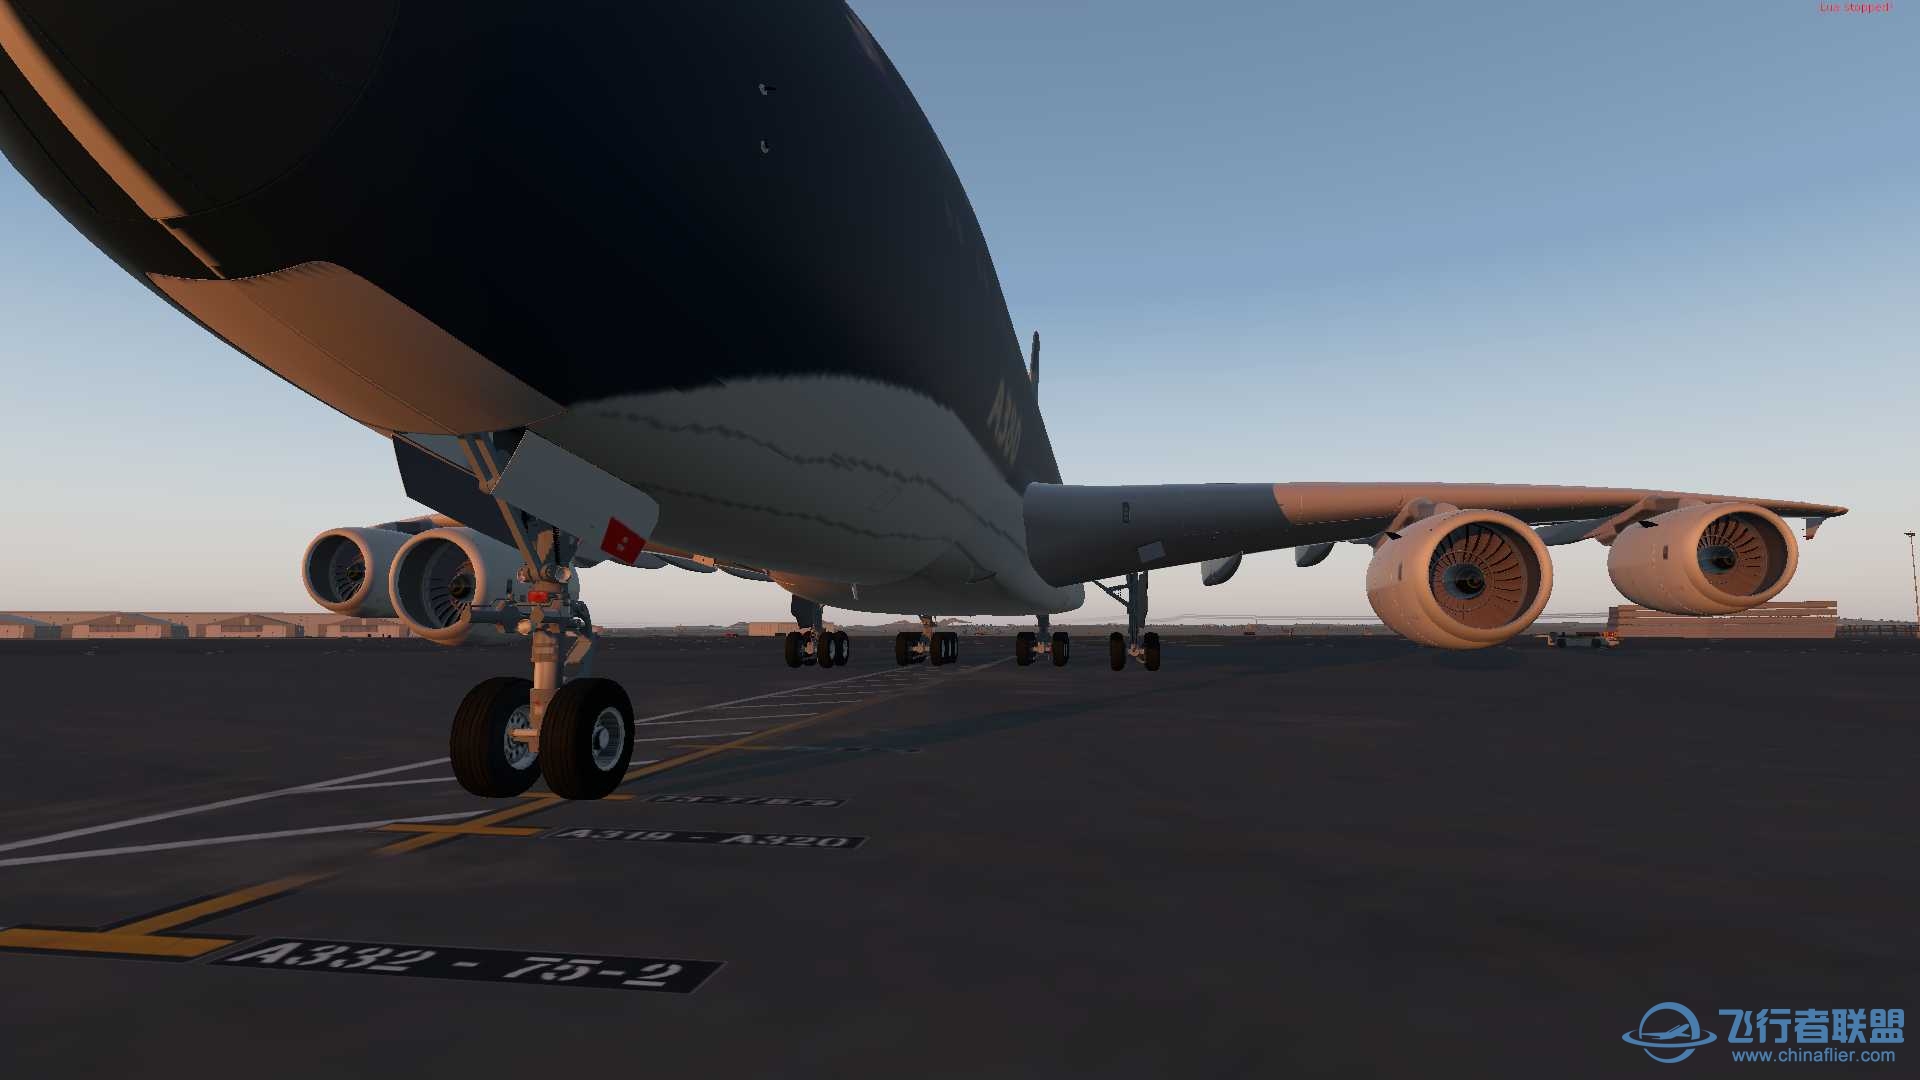 【首发自制】空客A380星海航空蓝鲸号飞翔从此大不同涂装-5788 